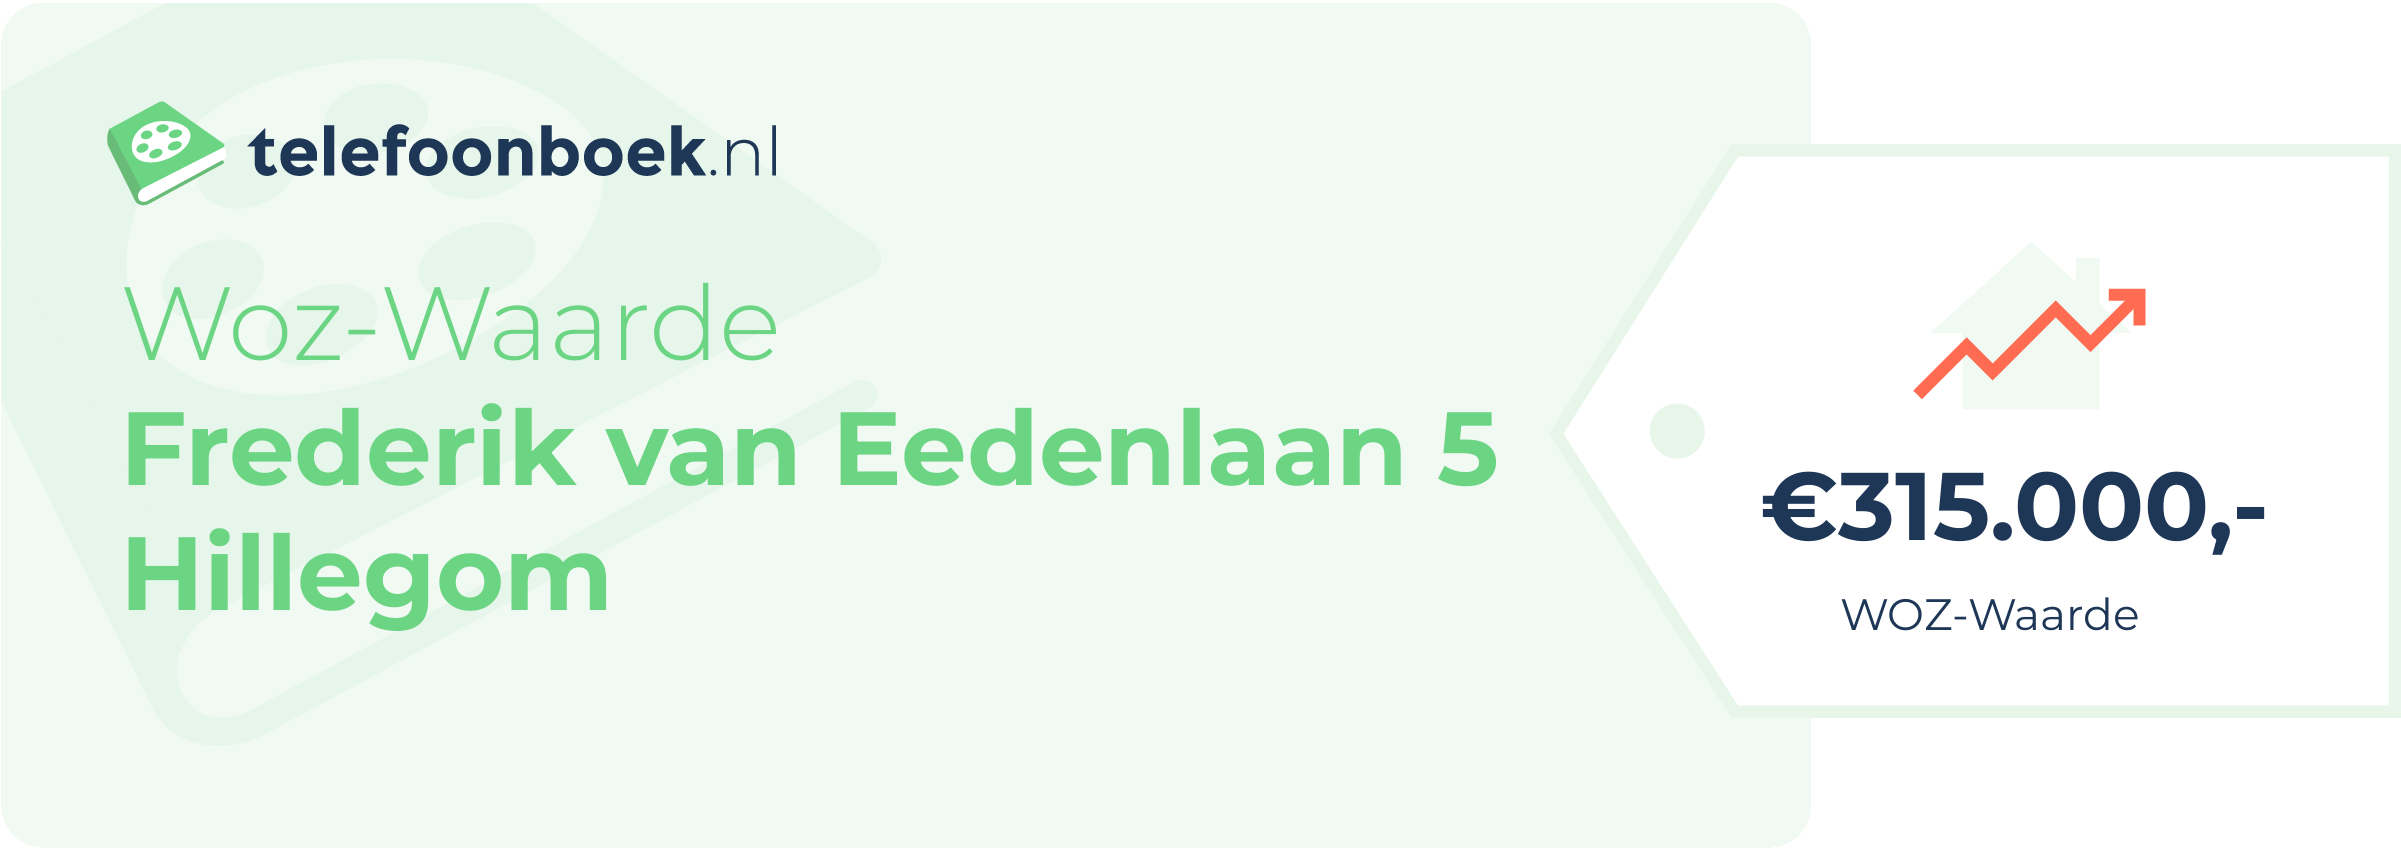 WOZ-waarde Frederik Van Eedenlaan 5 Hillegom